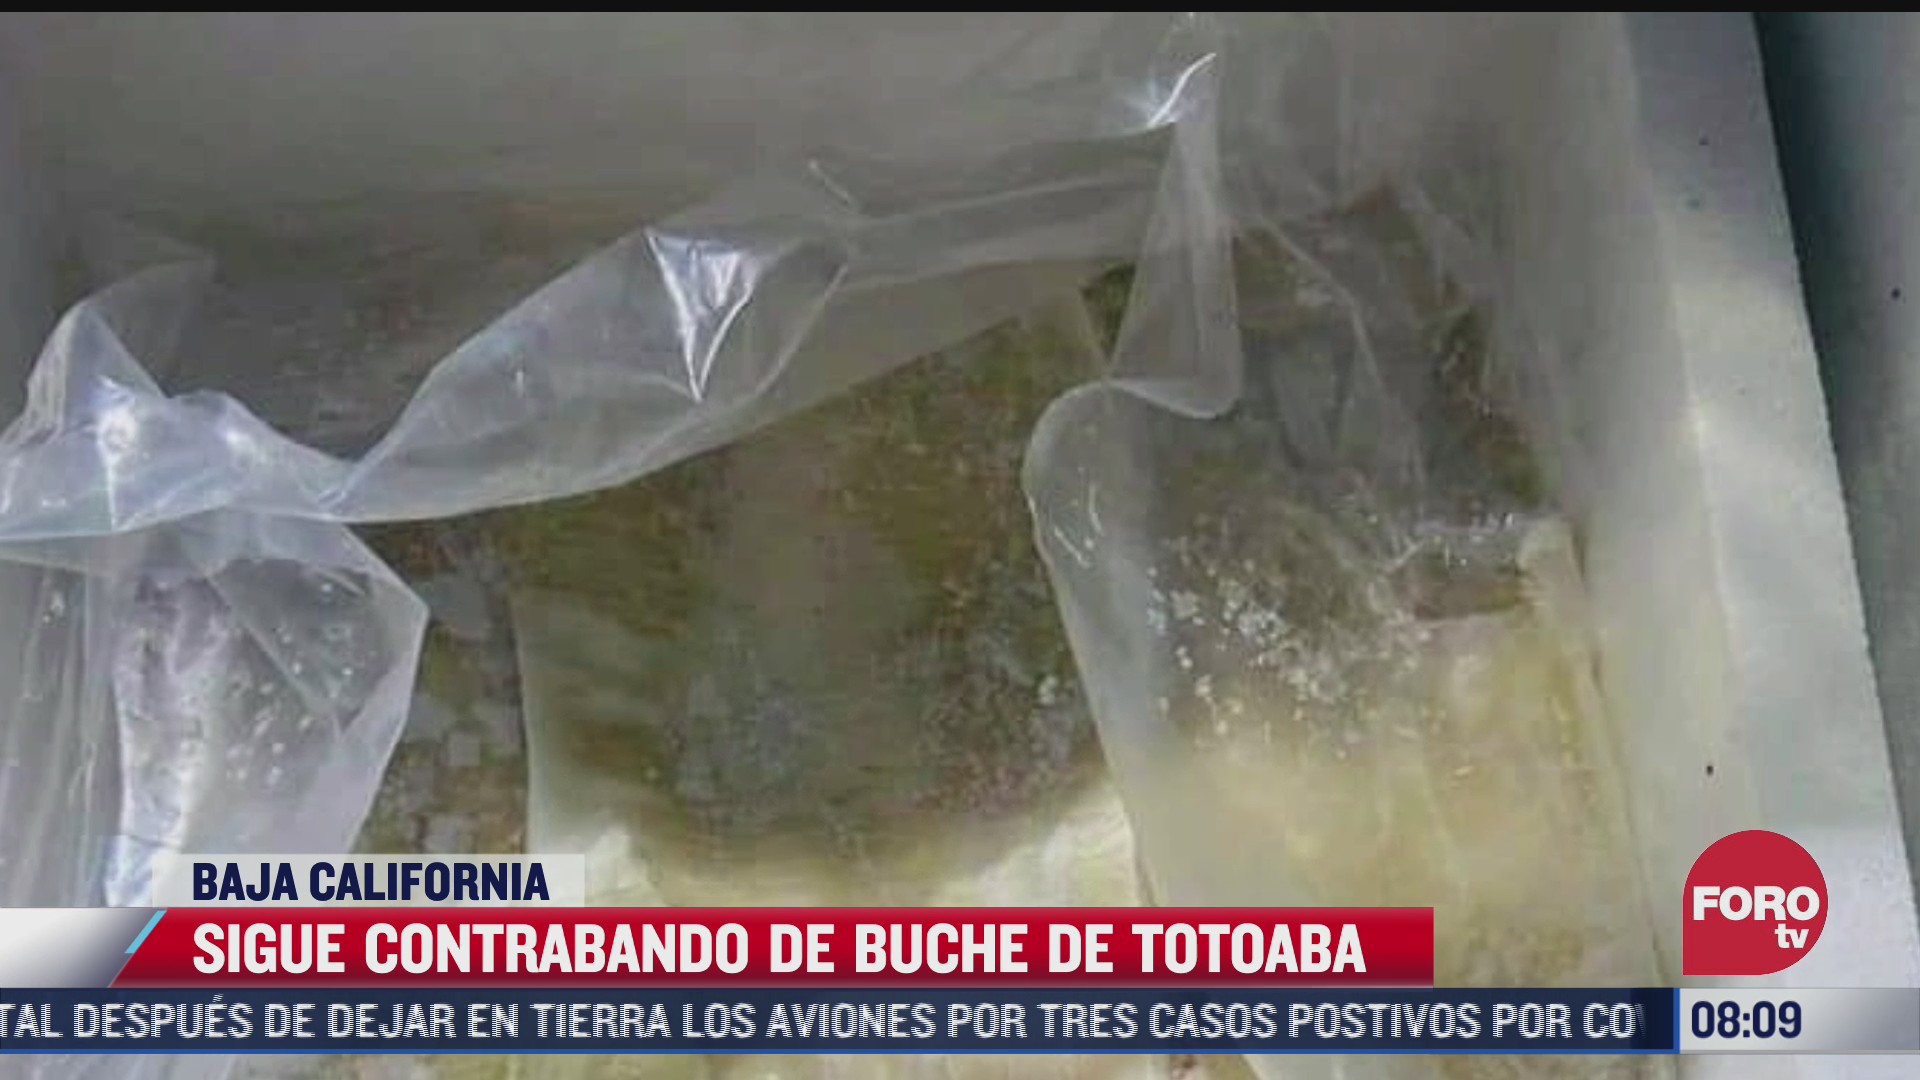 aseguran 100 kilos de buche de totoaba en baja california hay 3 detenidos